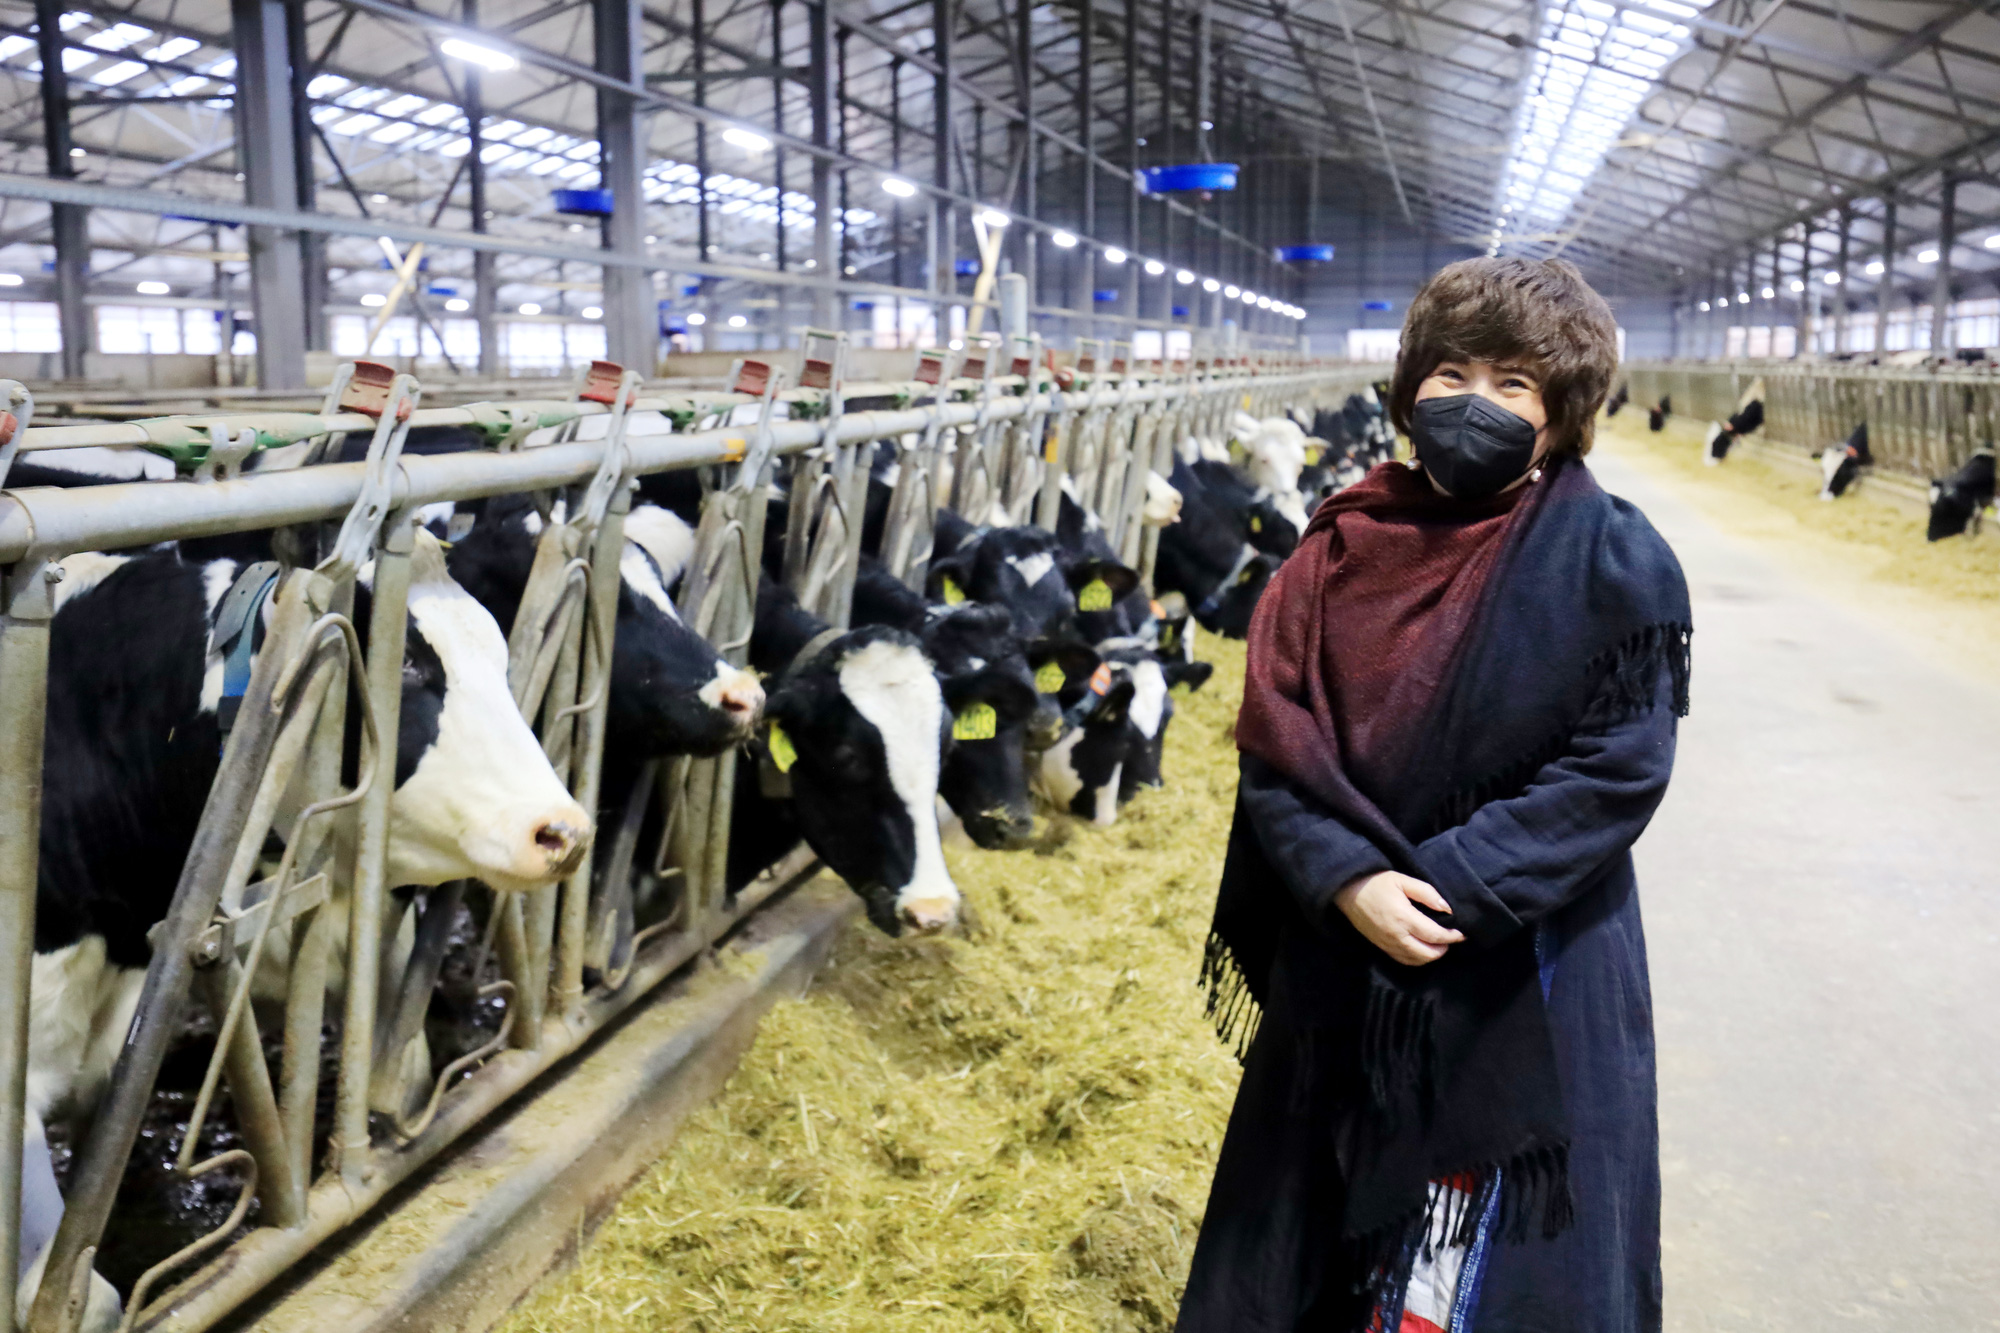 Tổ hợp chăn nuôi bò sữa và chế biến sữa của TH tại Nga: Điểm sáng trong quan hệ kinh tế Việt- Nga - Ảnh 3.